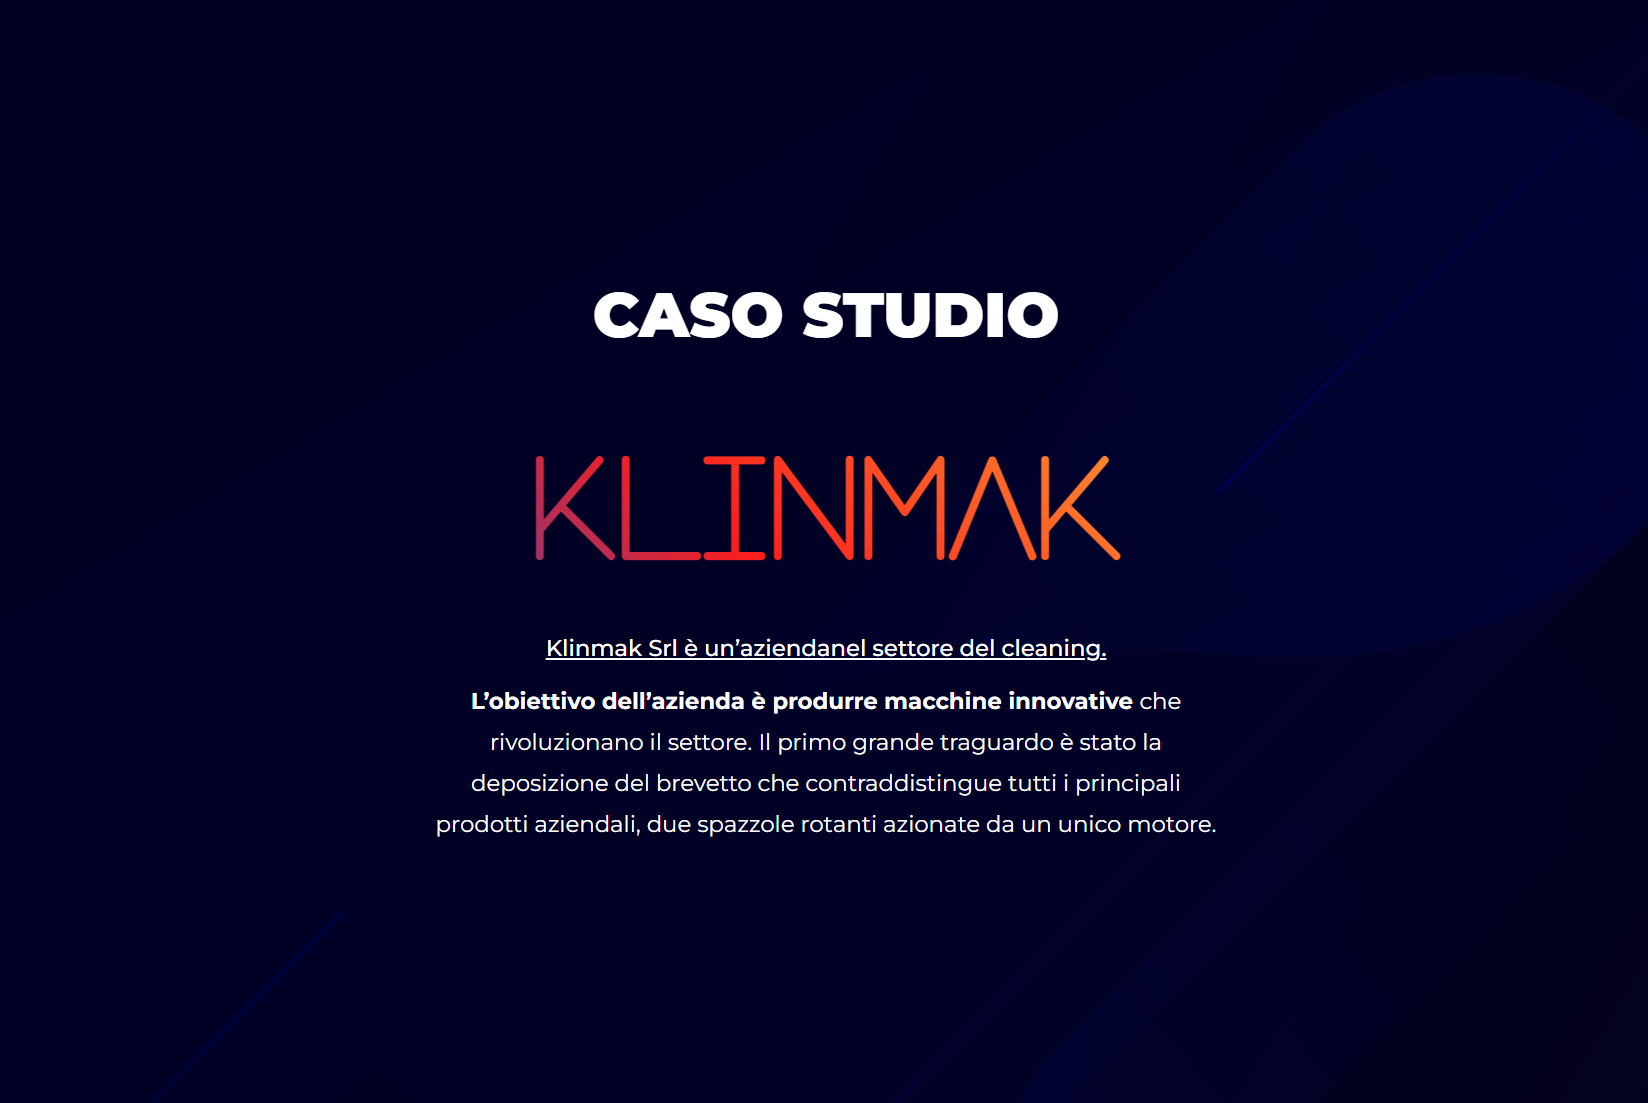 Klinmak diventa case history di VideoAnimate